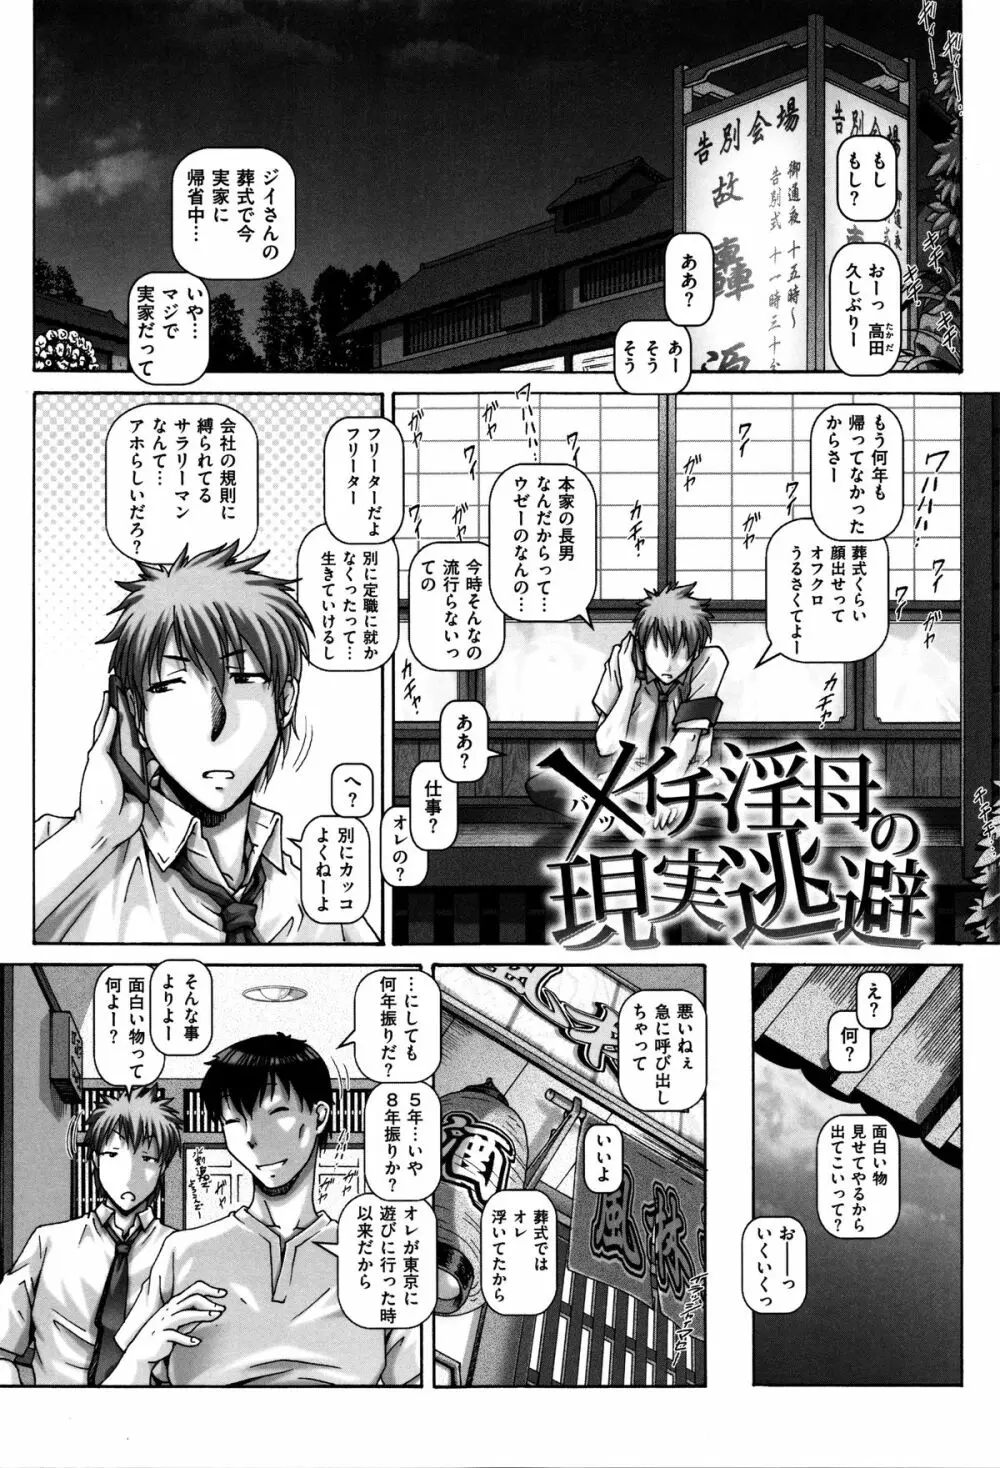 Kachiku Ane - chapter 1,5,7 & 9 Page.2